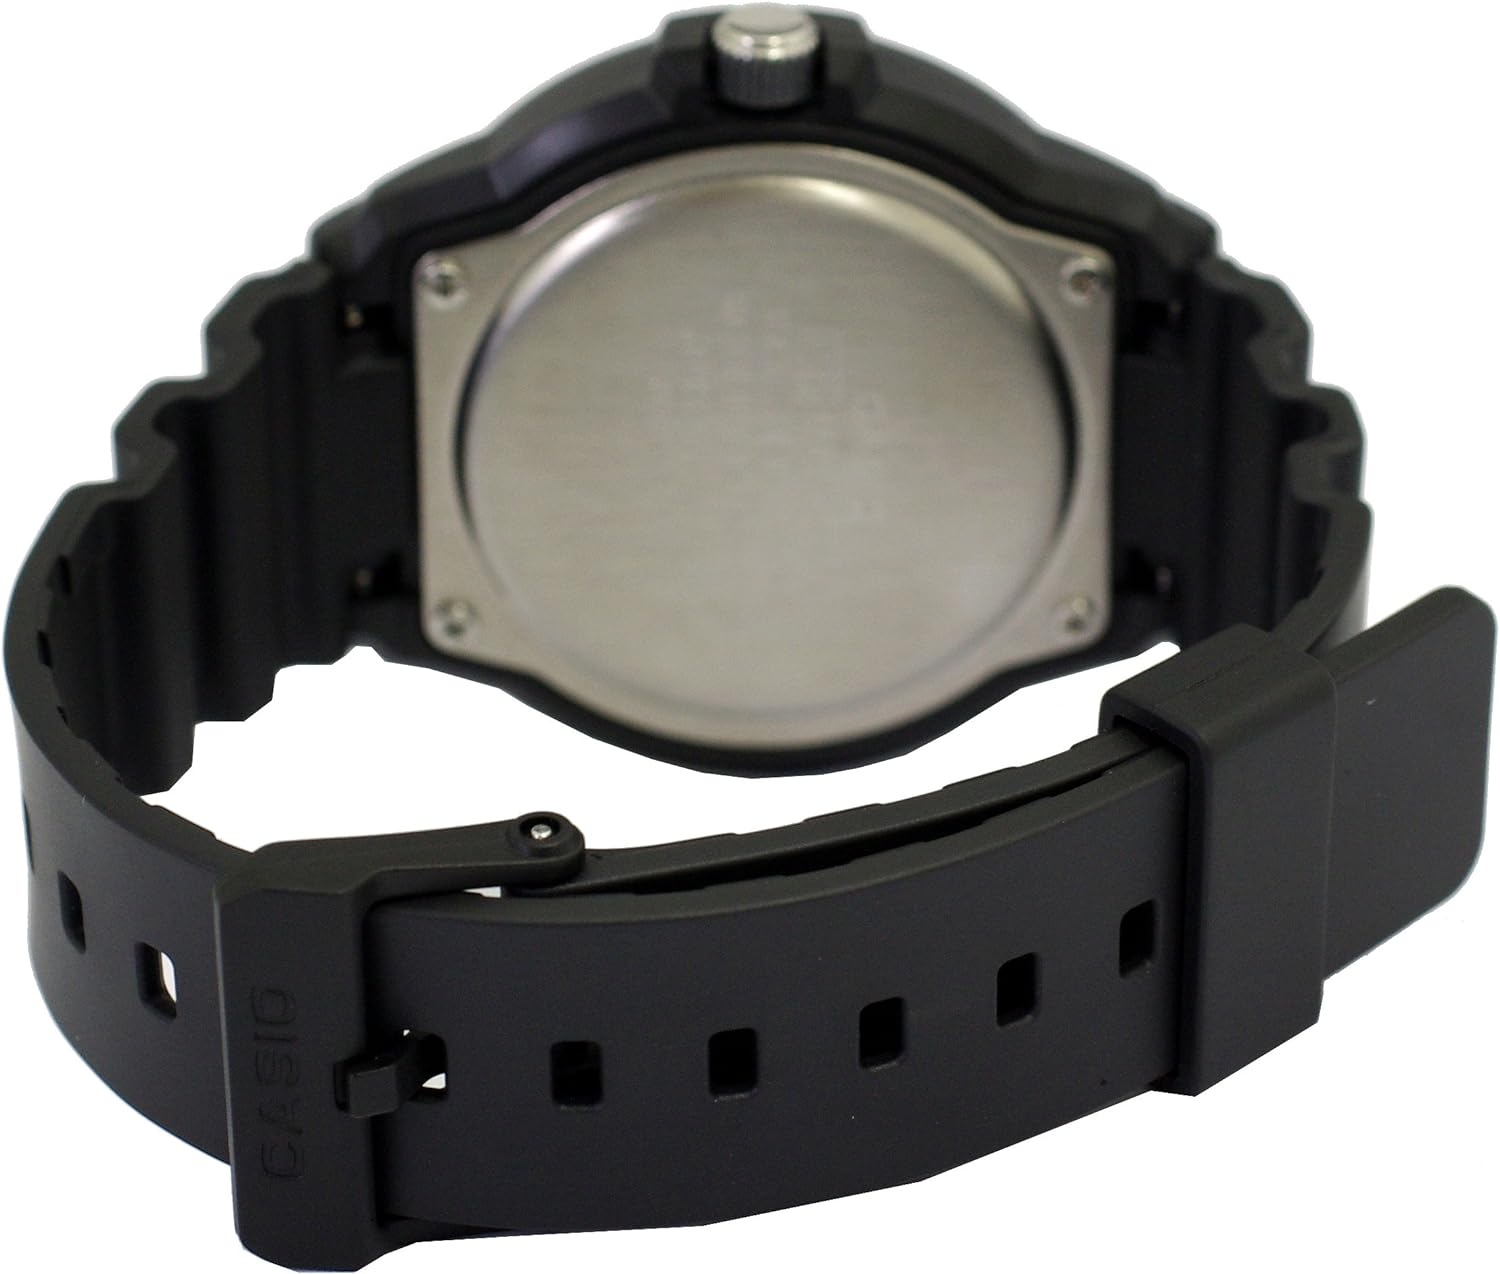 Casio Men's Black Dial Resin Analog Watch